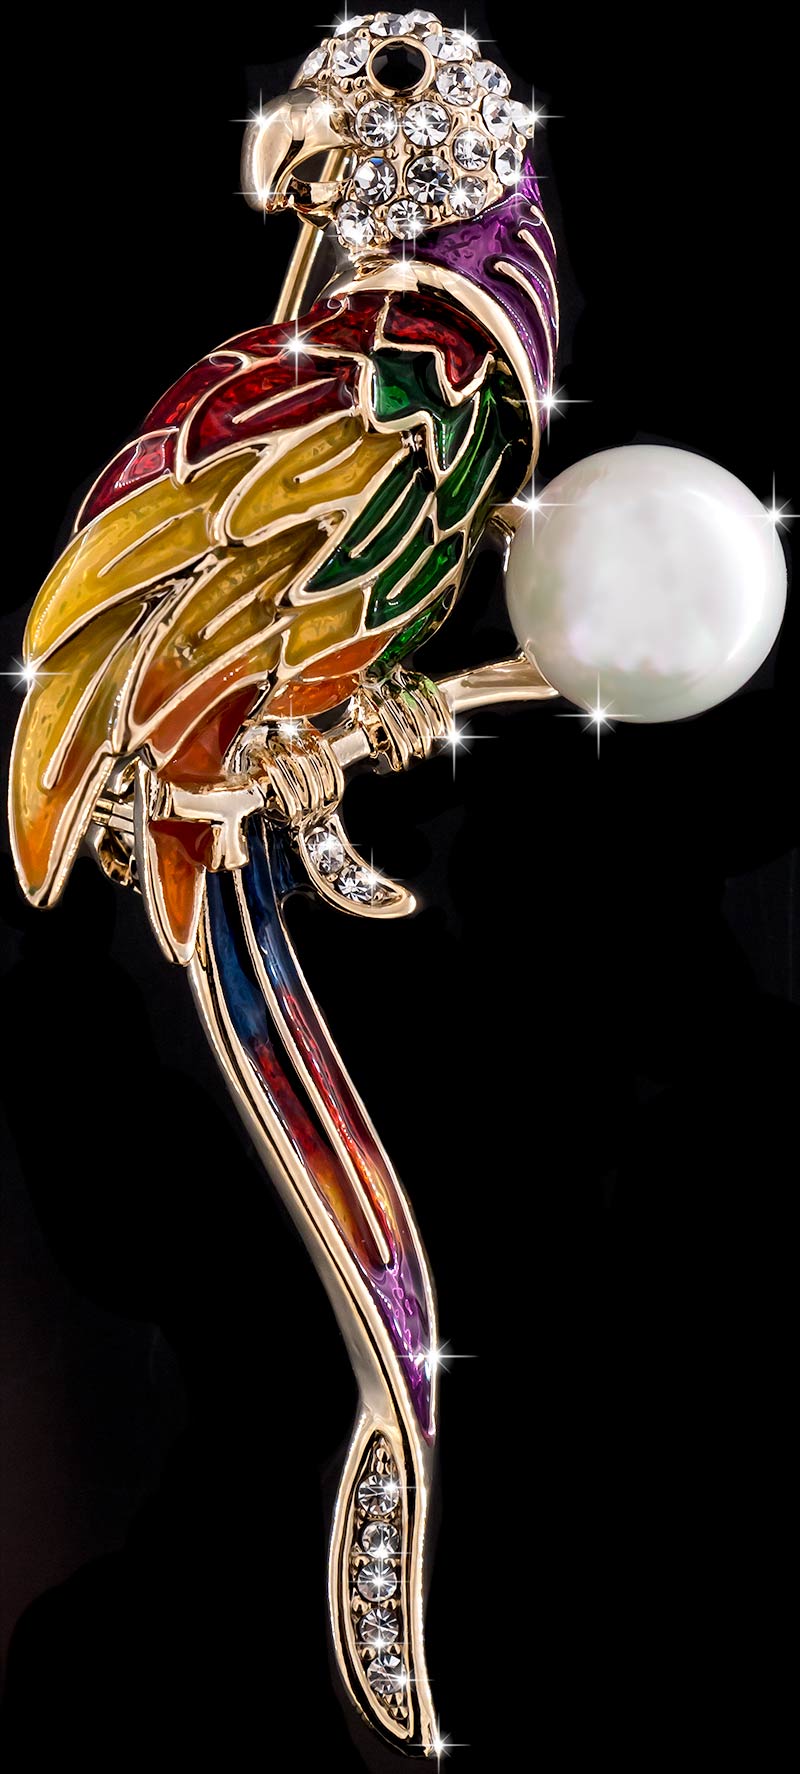 Brosche Papagei goldfarben mit bunten Federn, einer Perle und vielen weissen Strass Steinen BR048 oben